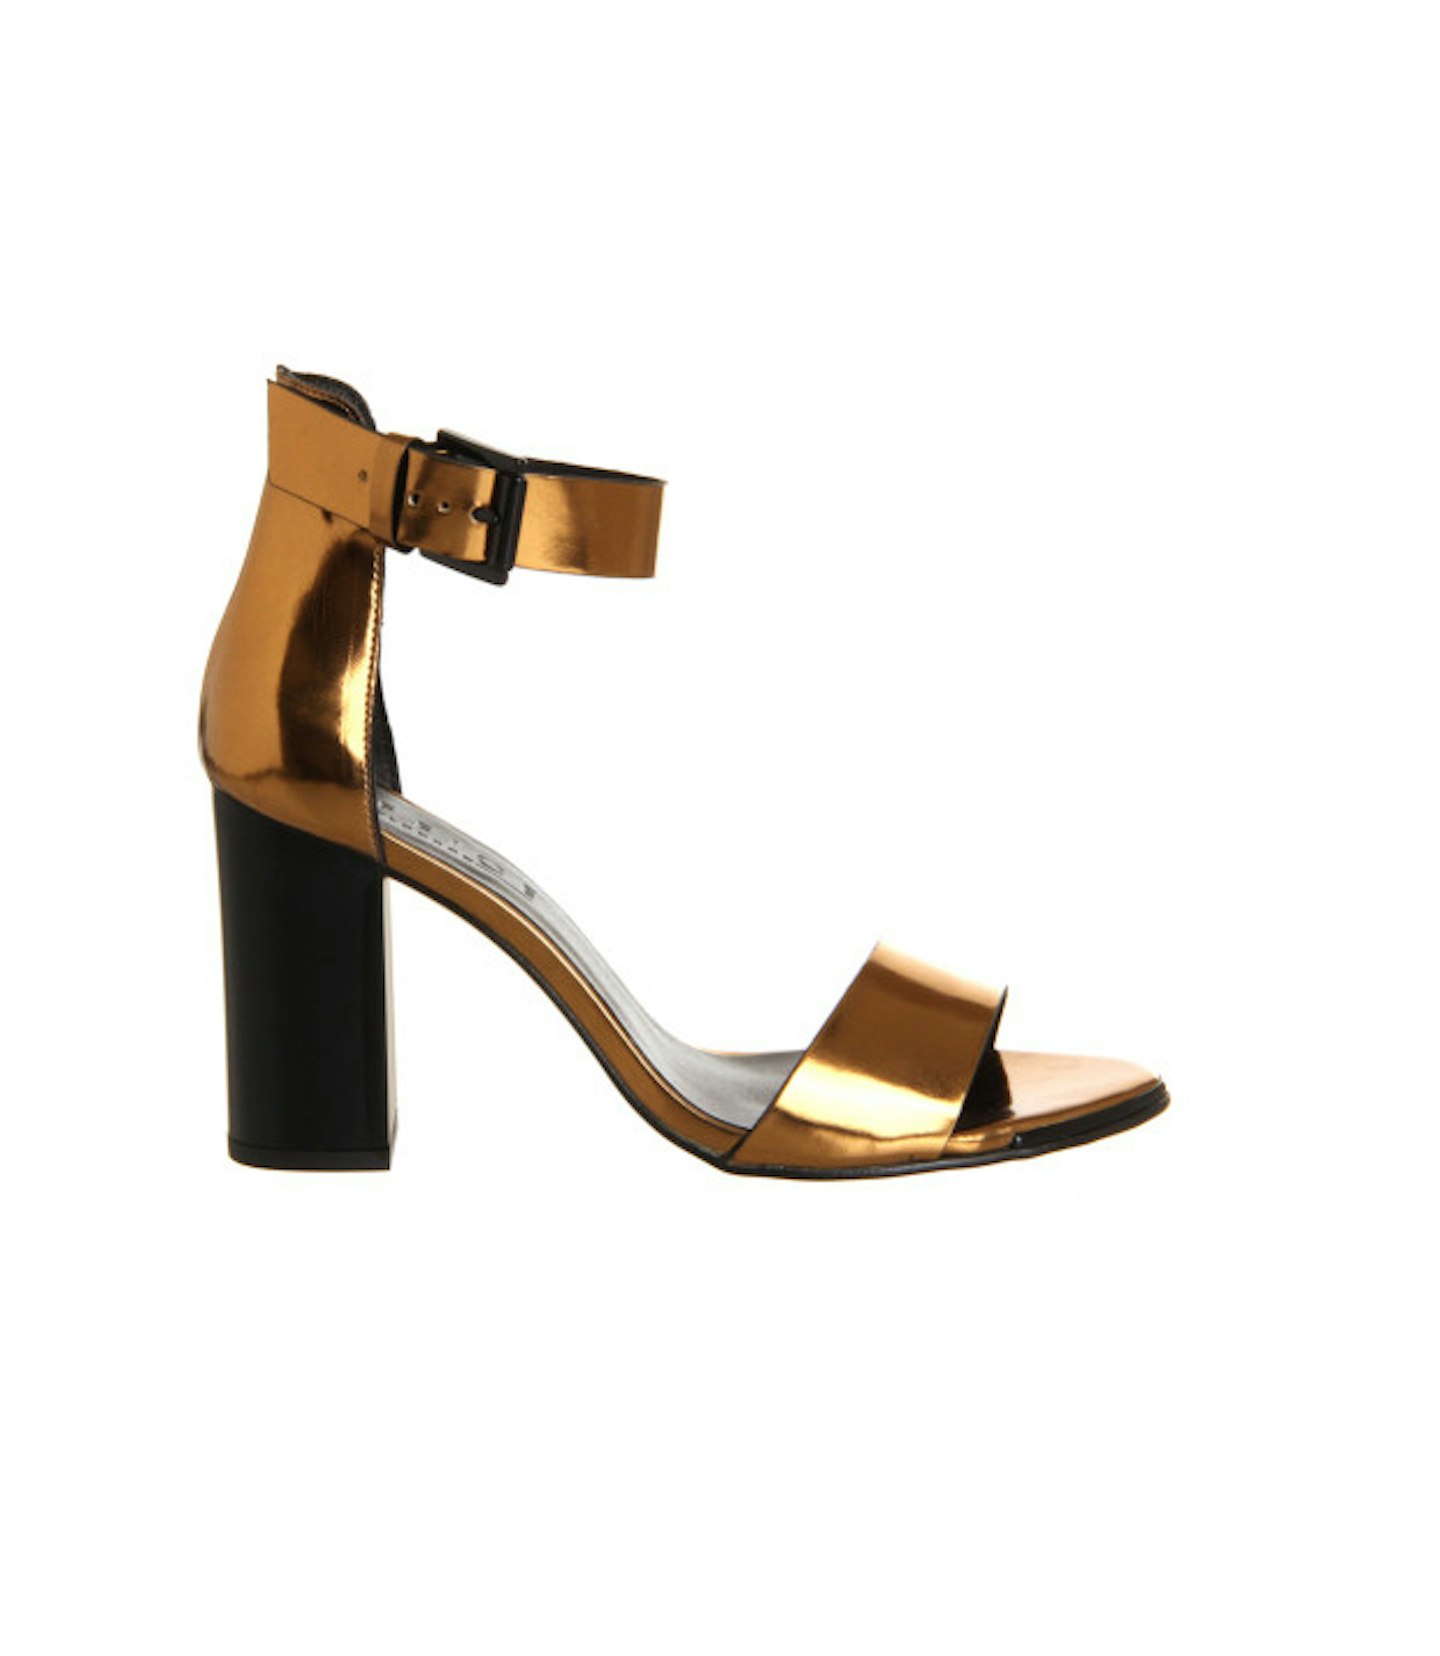 Bronze heeled sandals